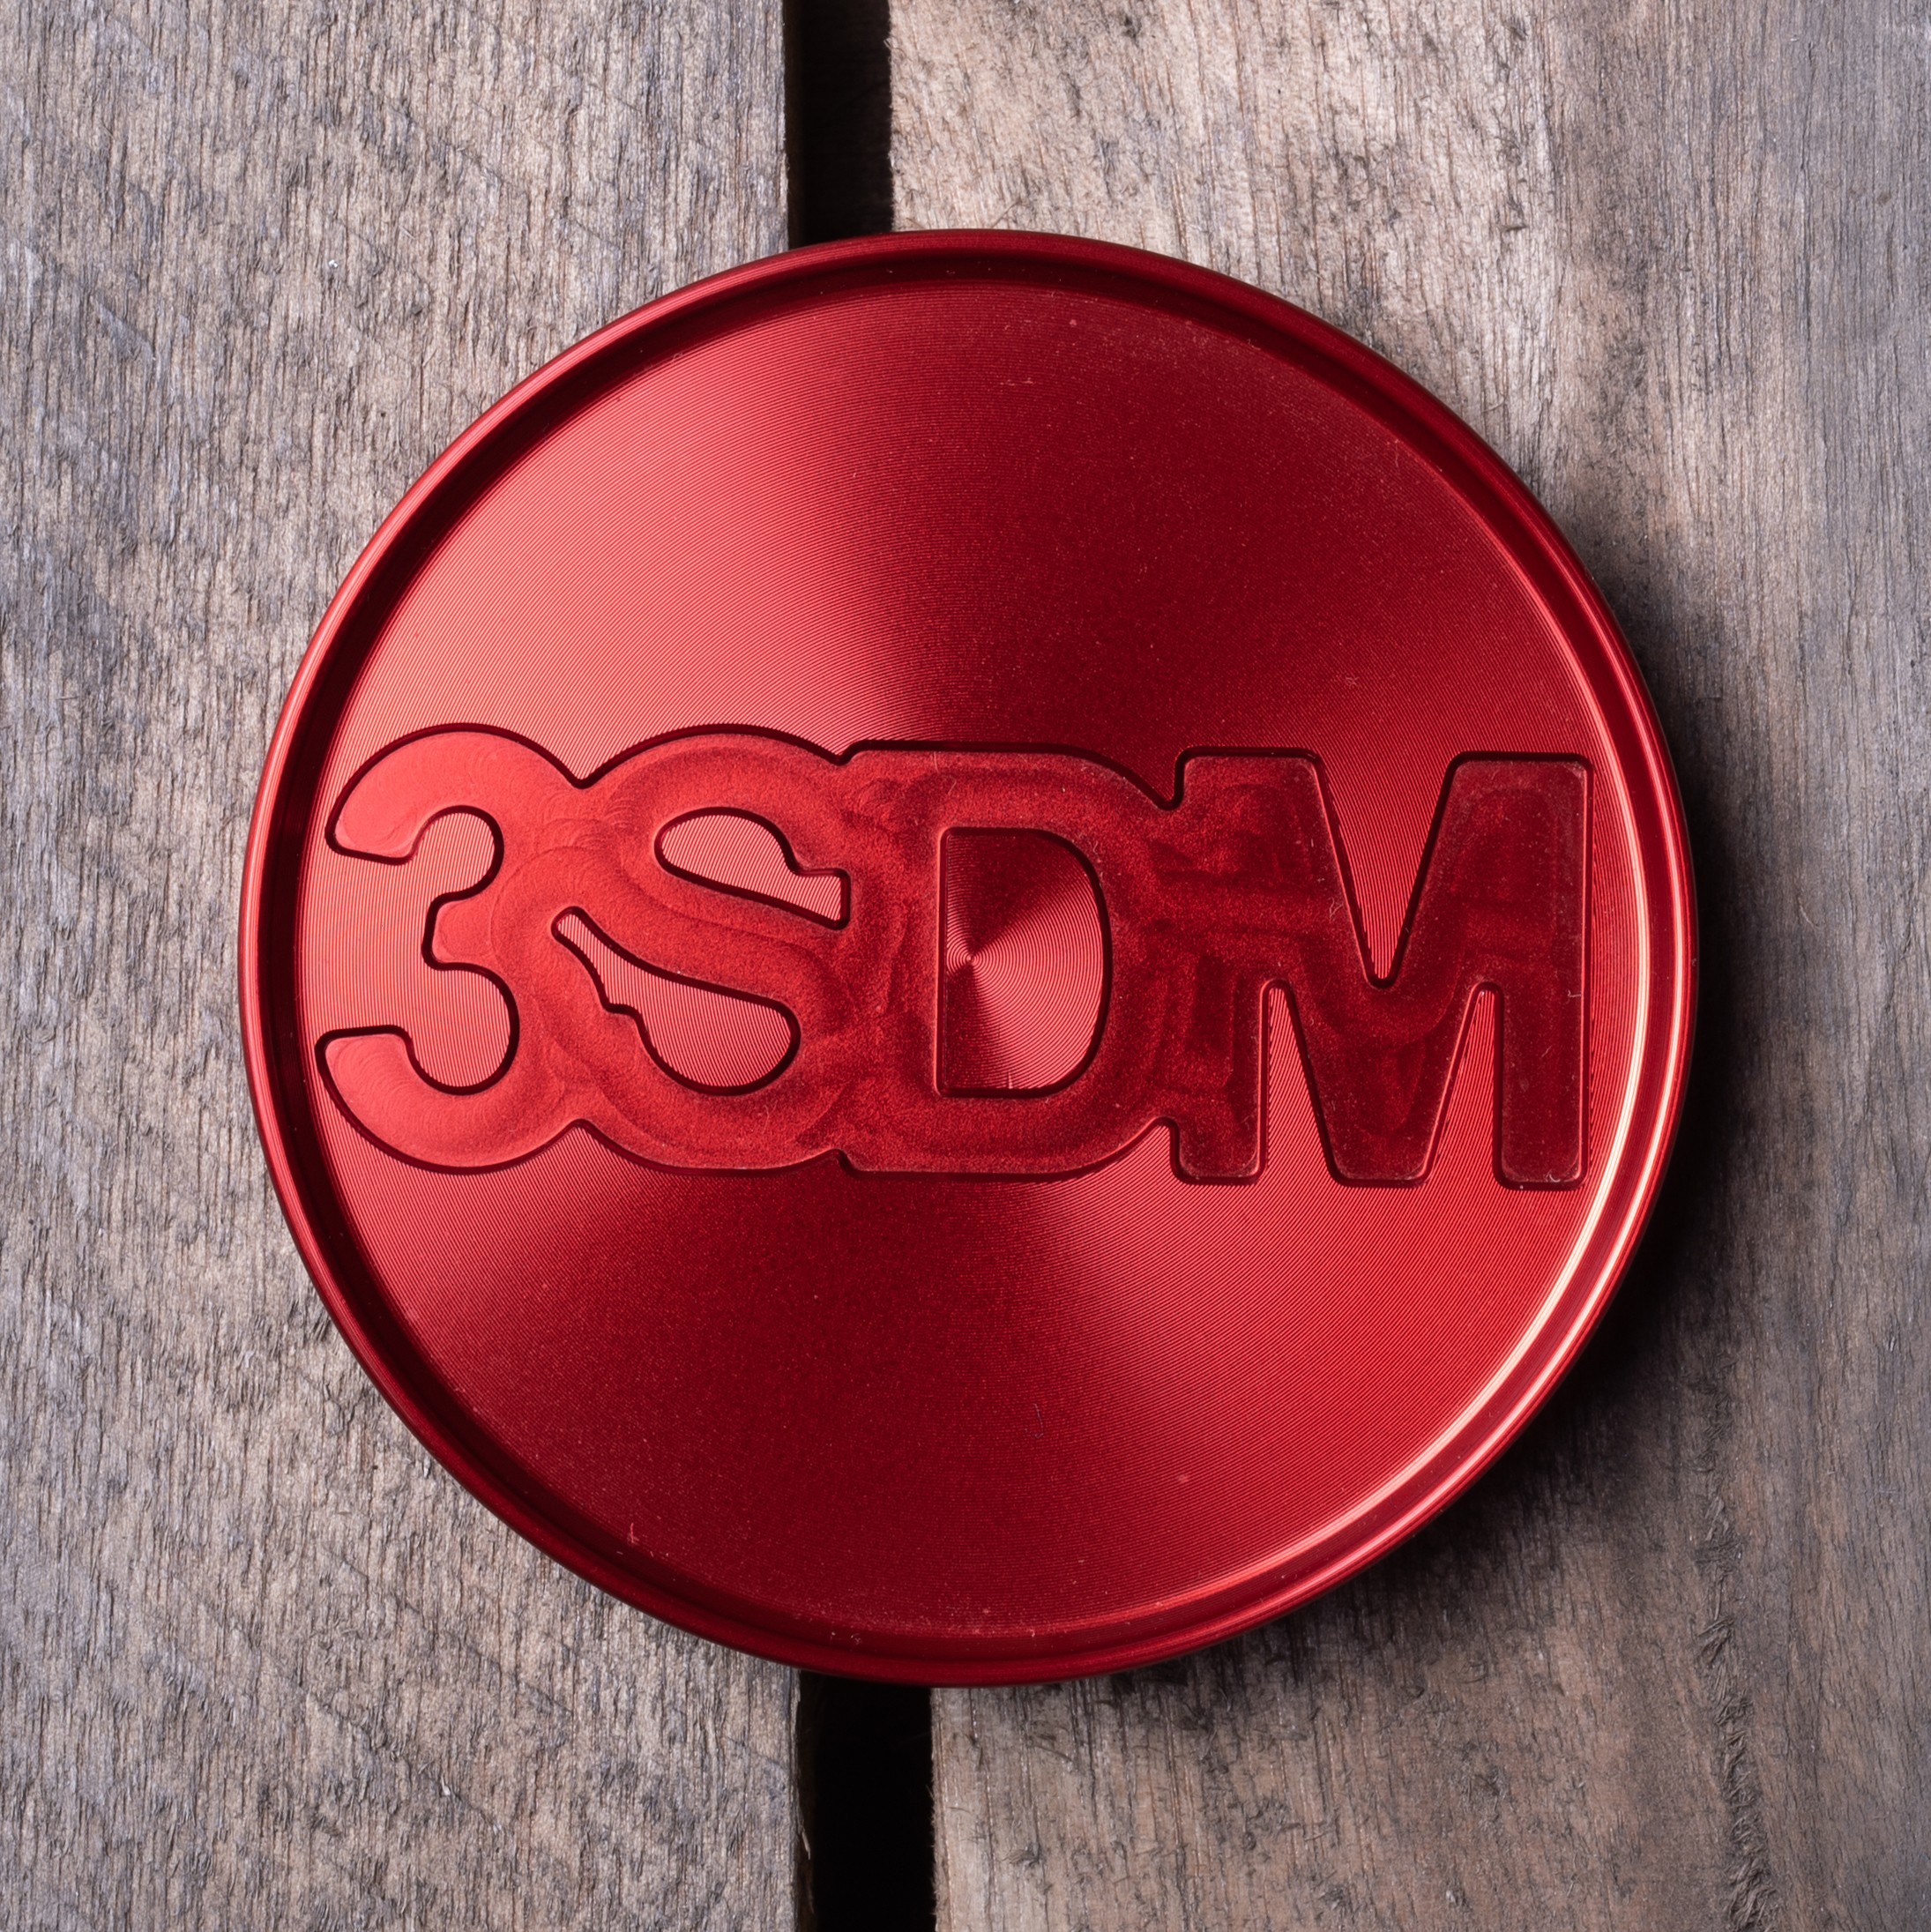 3SDM Metal Centre Caps | Red